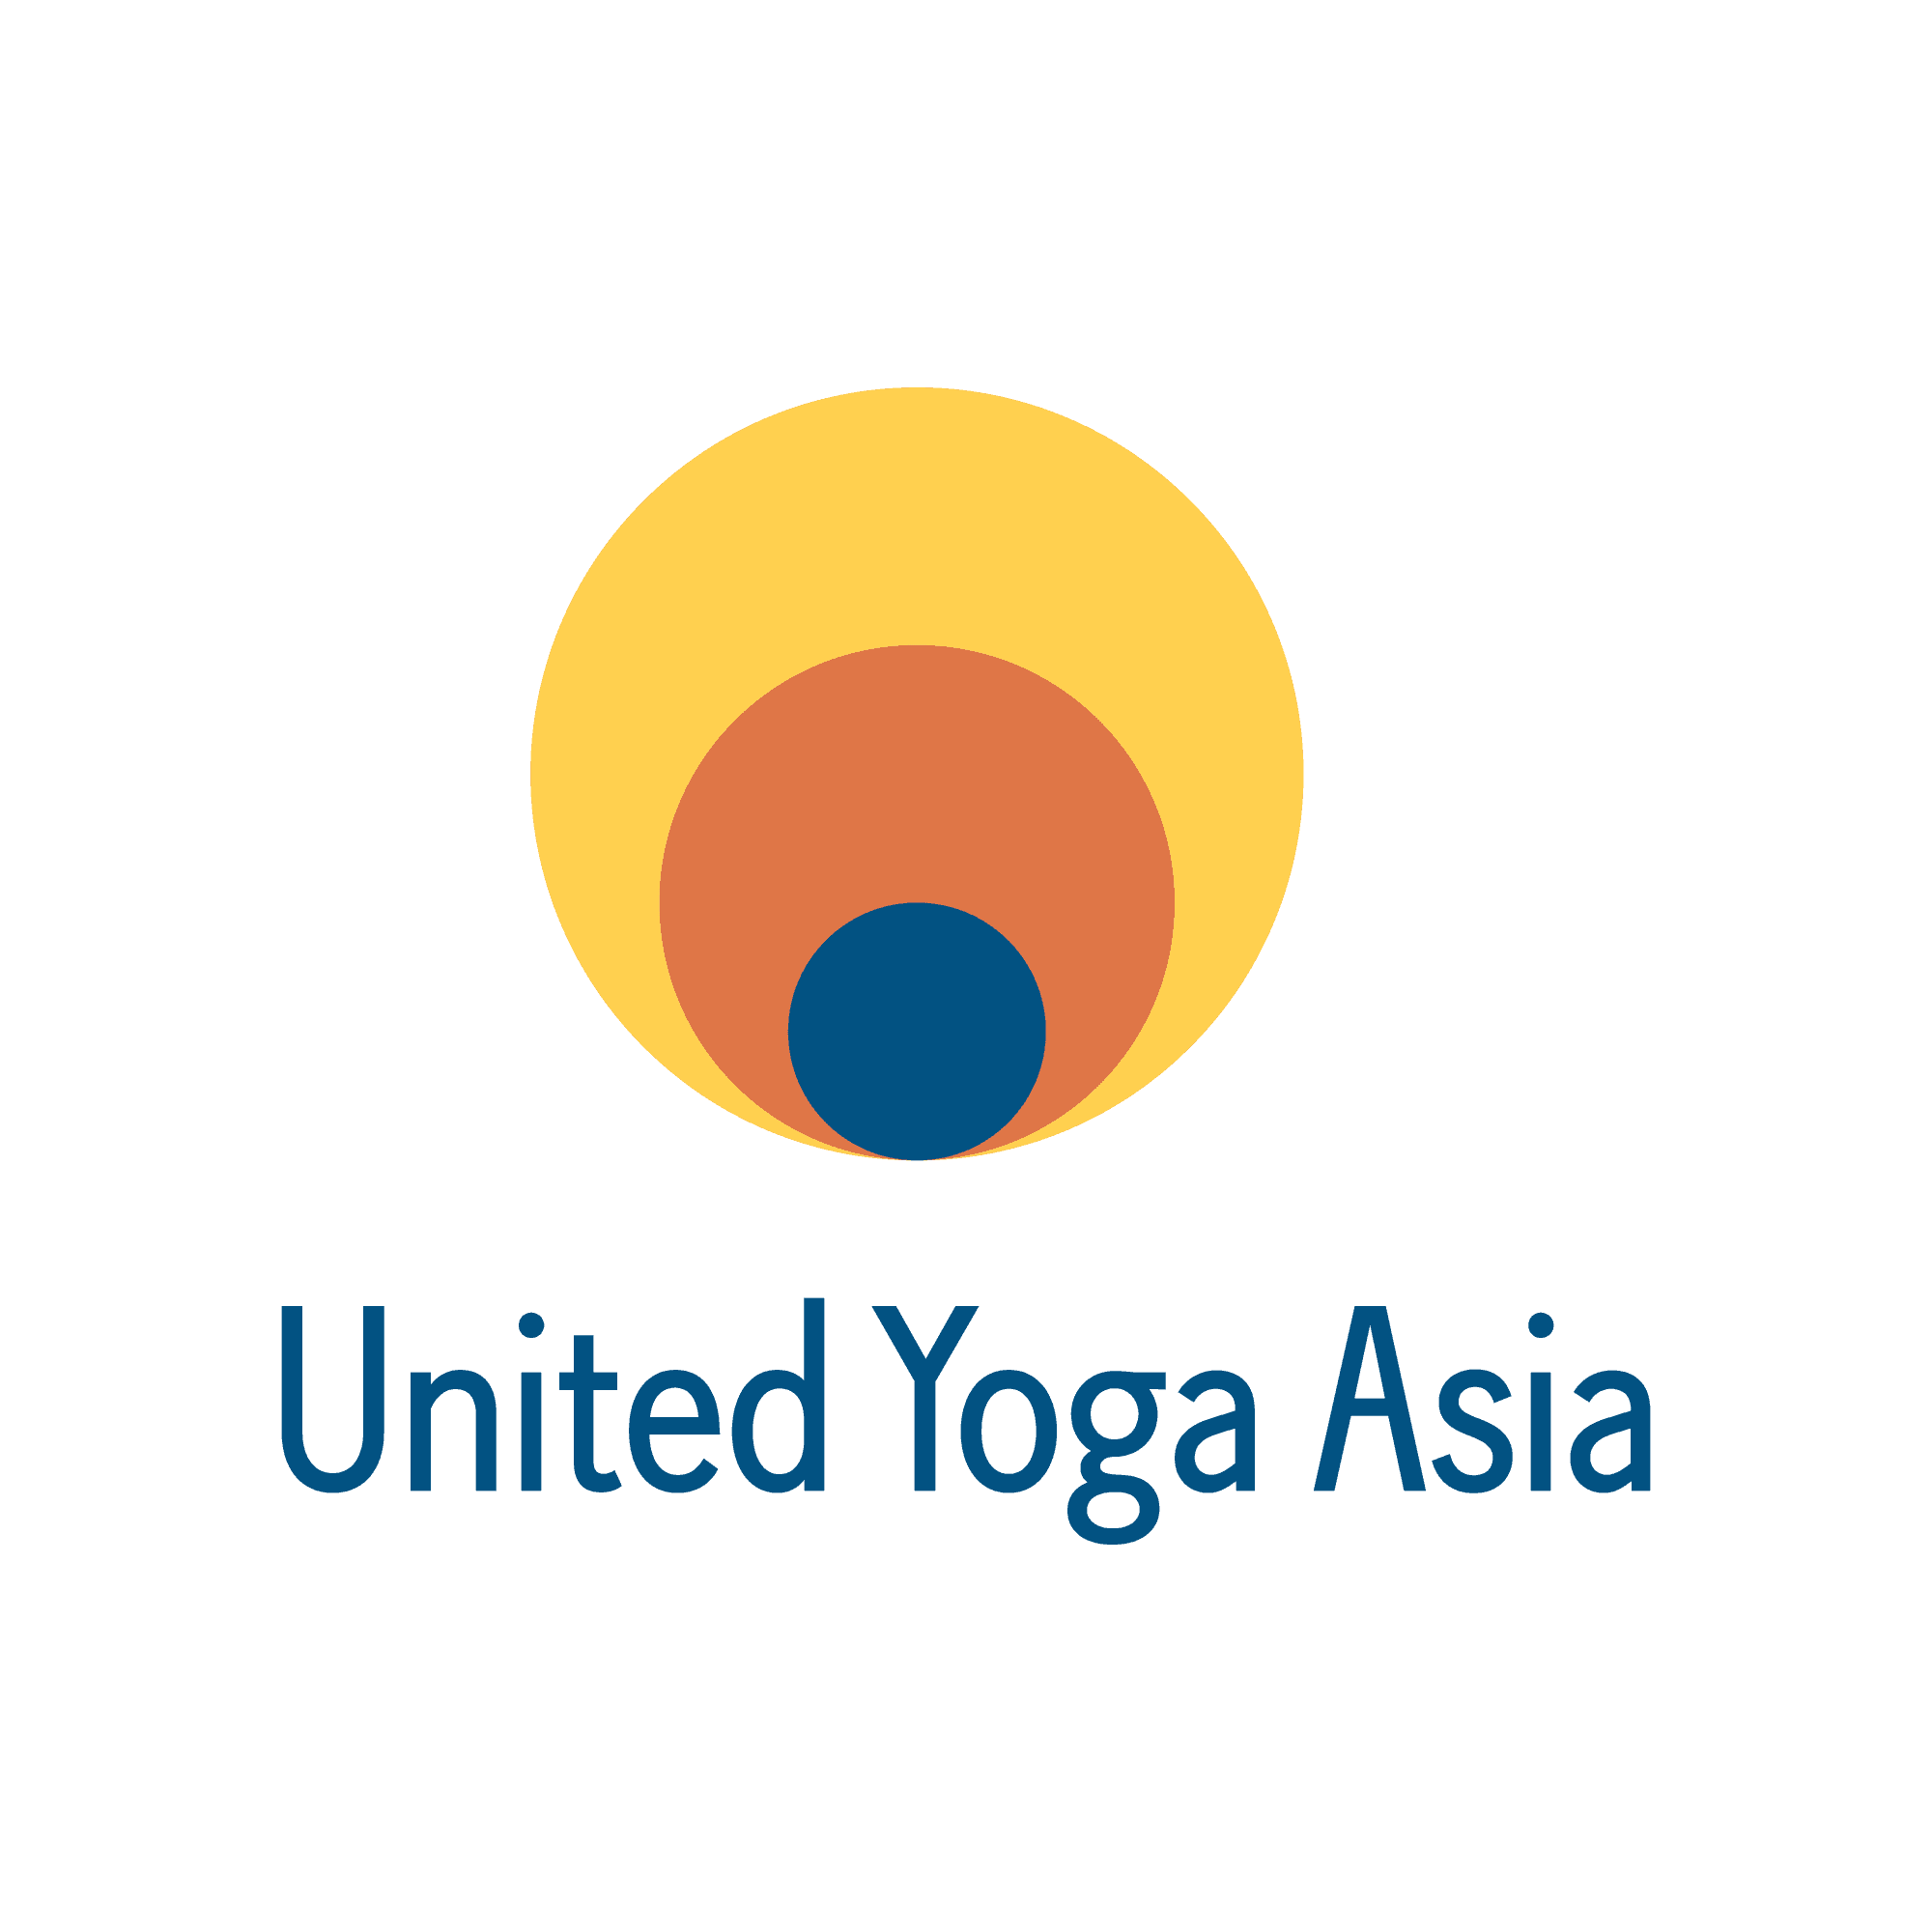 United Yoga Asia